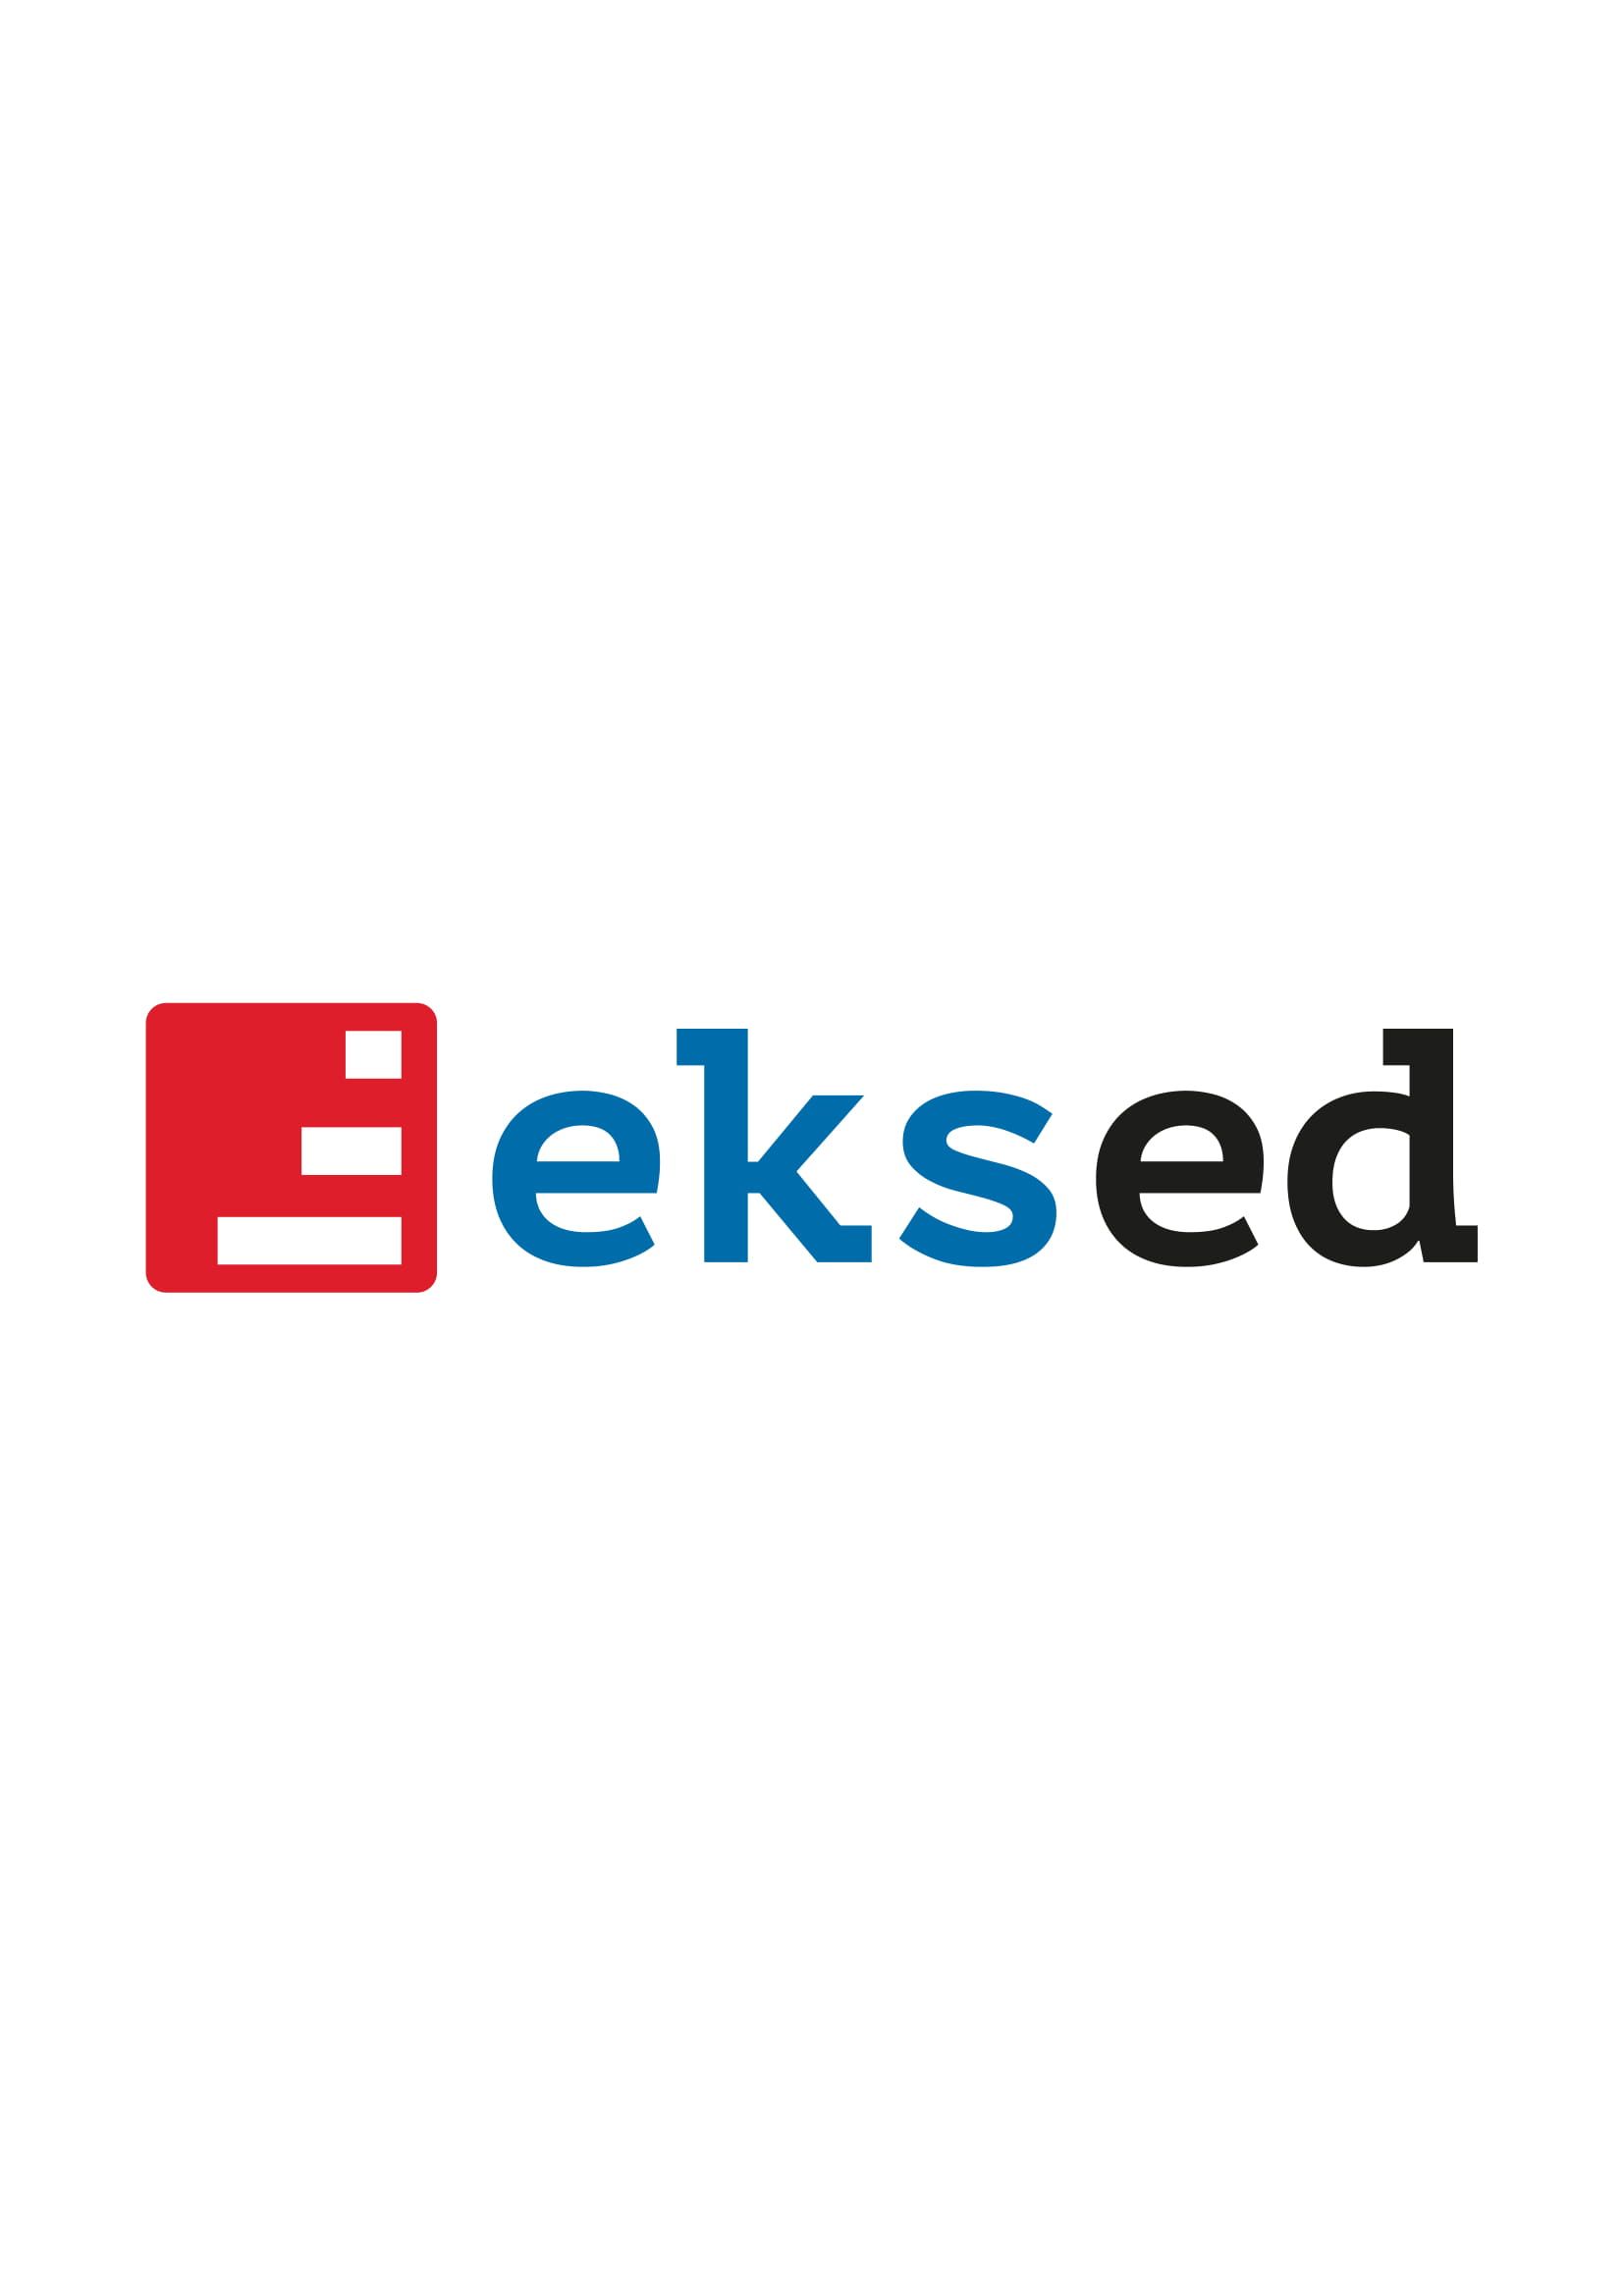 EKSED公司